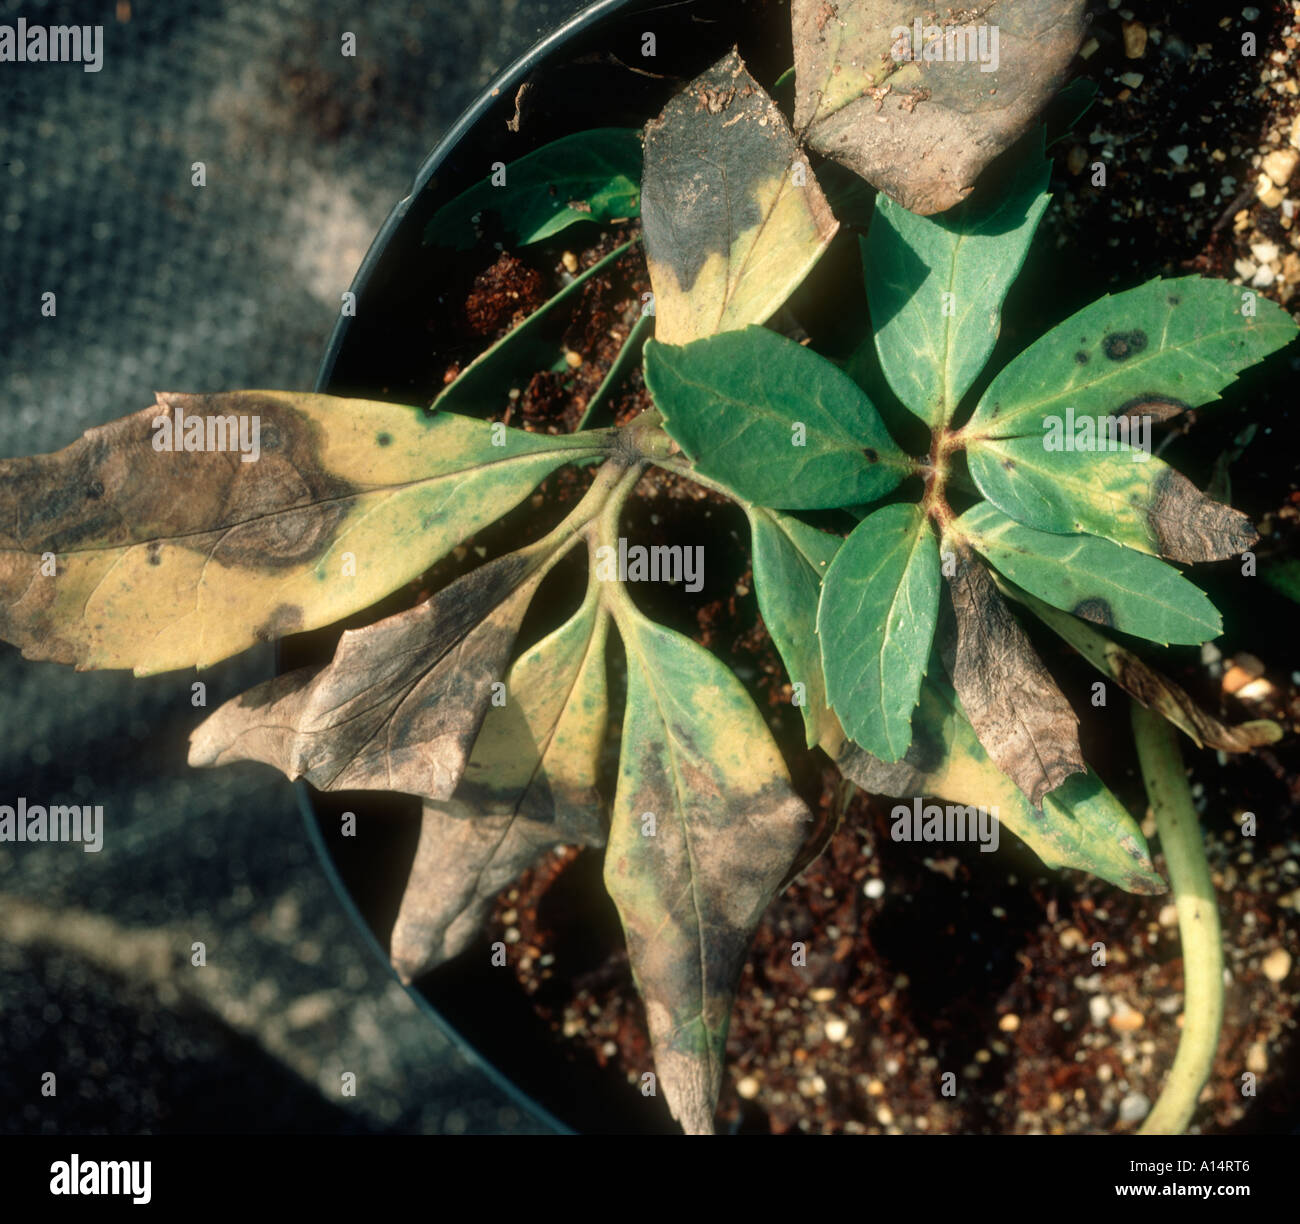 Helleborus leaf spot Coniothyrum hellebori on potted Helleborus niger plant Stock Photo